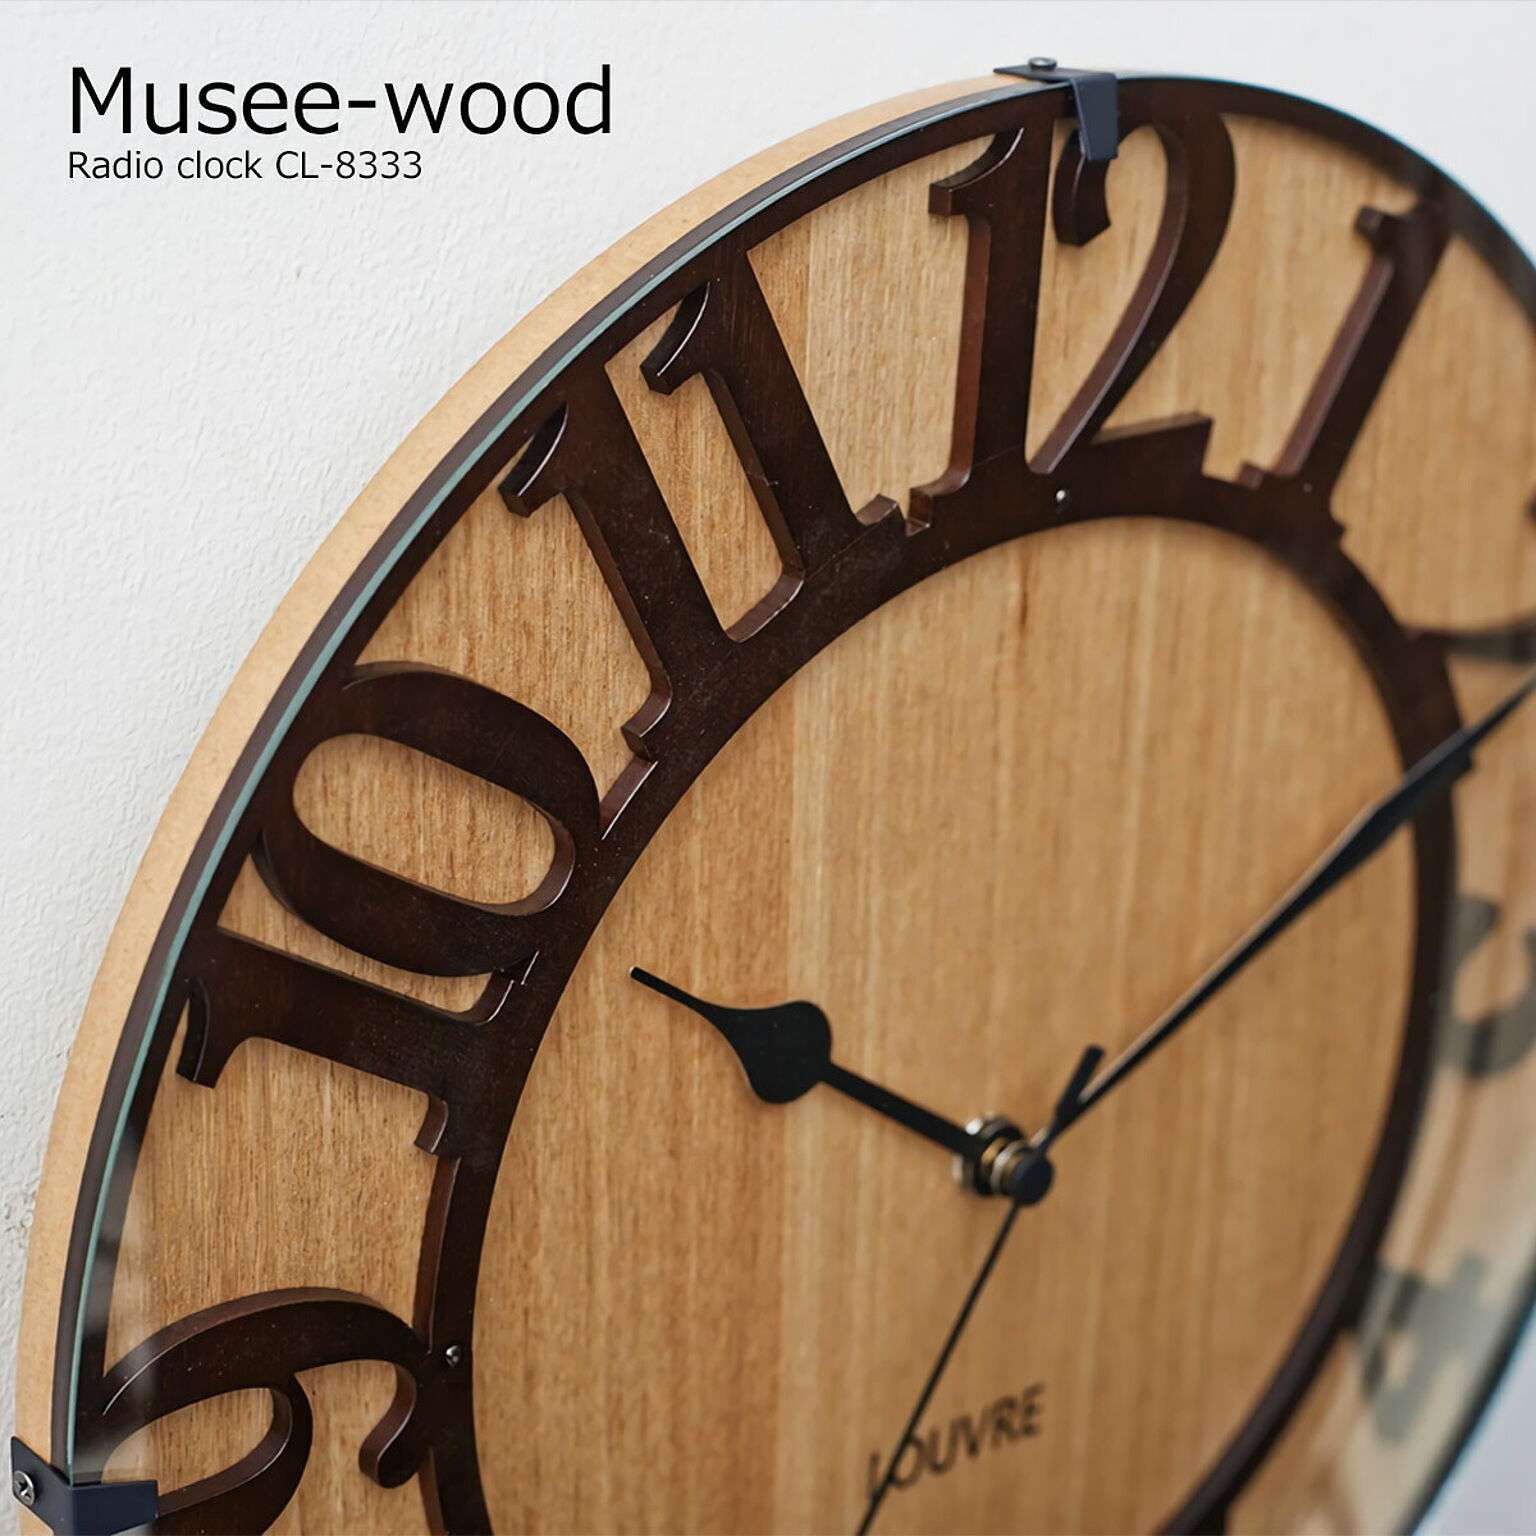 壁掛け時計 電波 おしゃれ 電波時計 時計 壁掛け 北欧 掛け時計 Musee wood ミュゼ ウッドCL-8333 木製 ナチュラル インテリア ウォールクロック デザイナーズ オシャレ